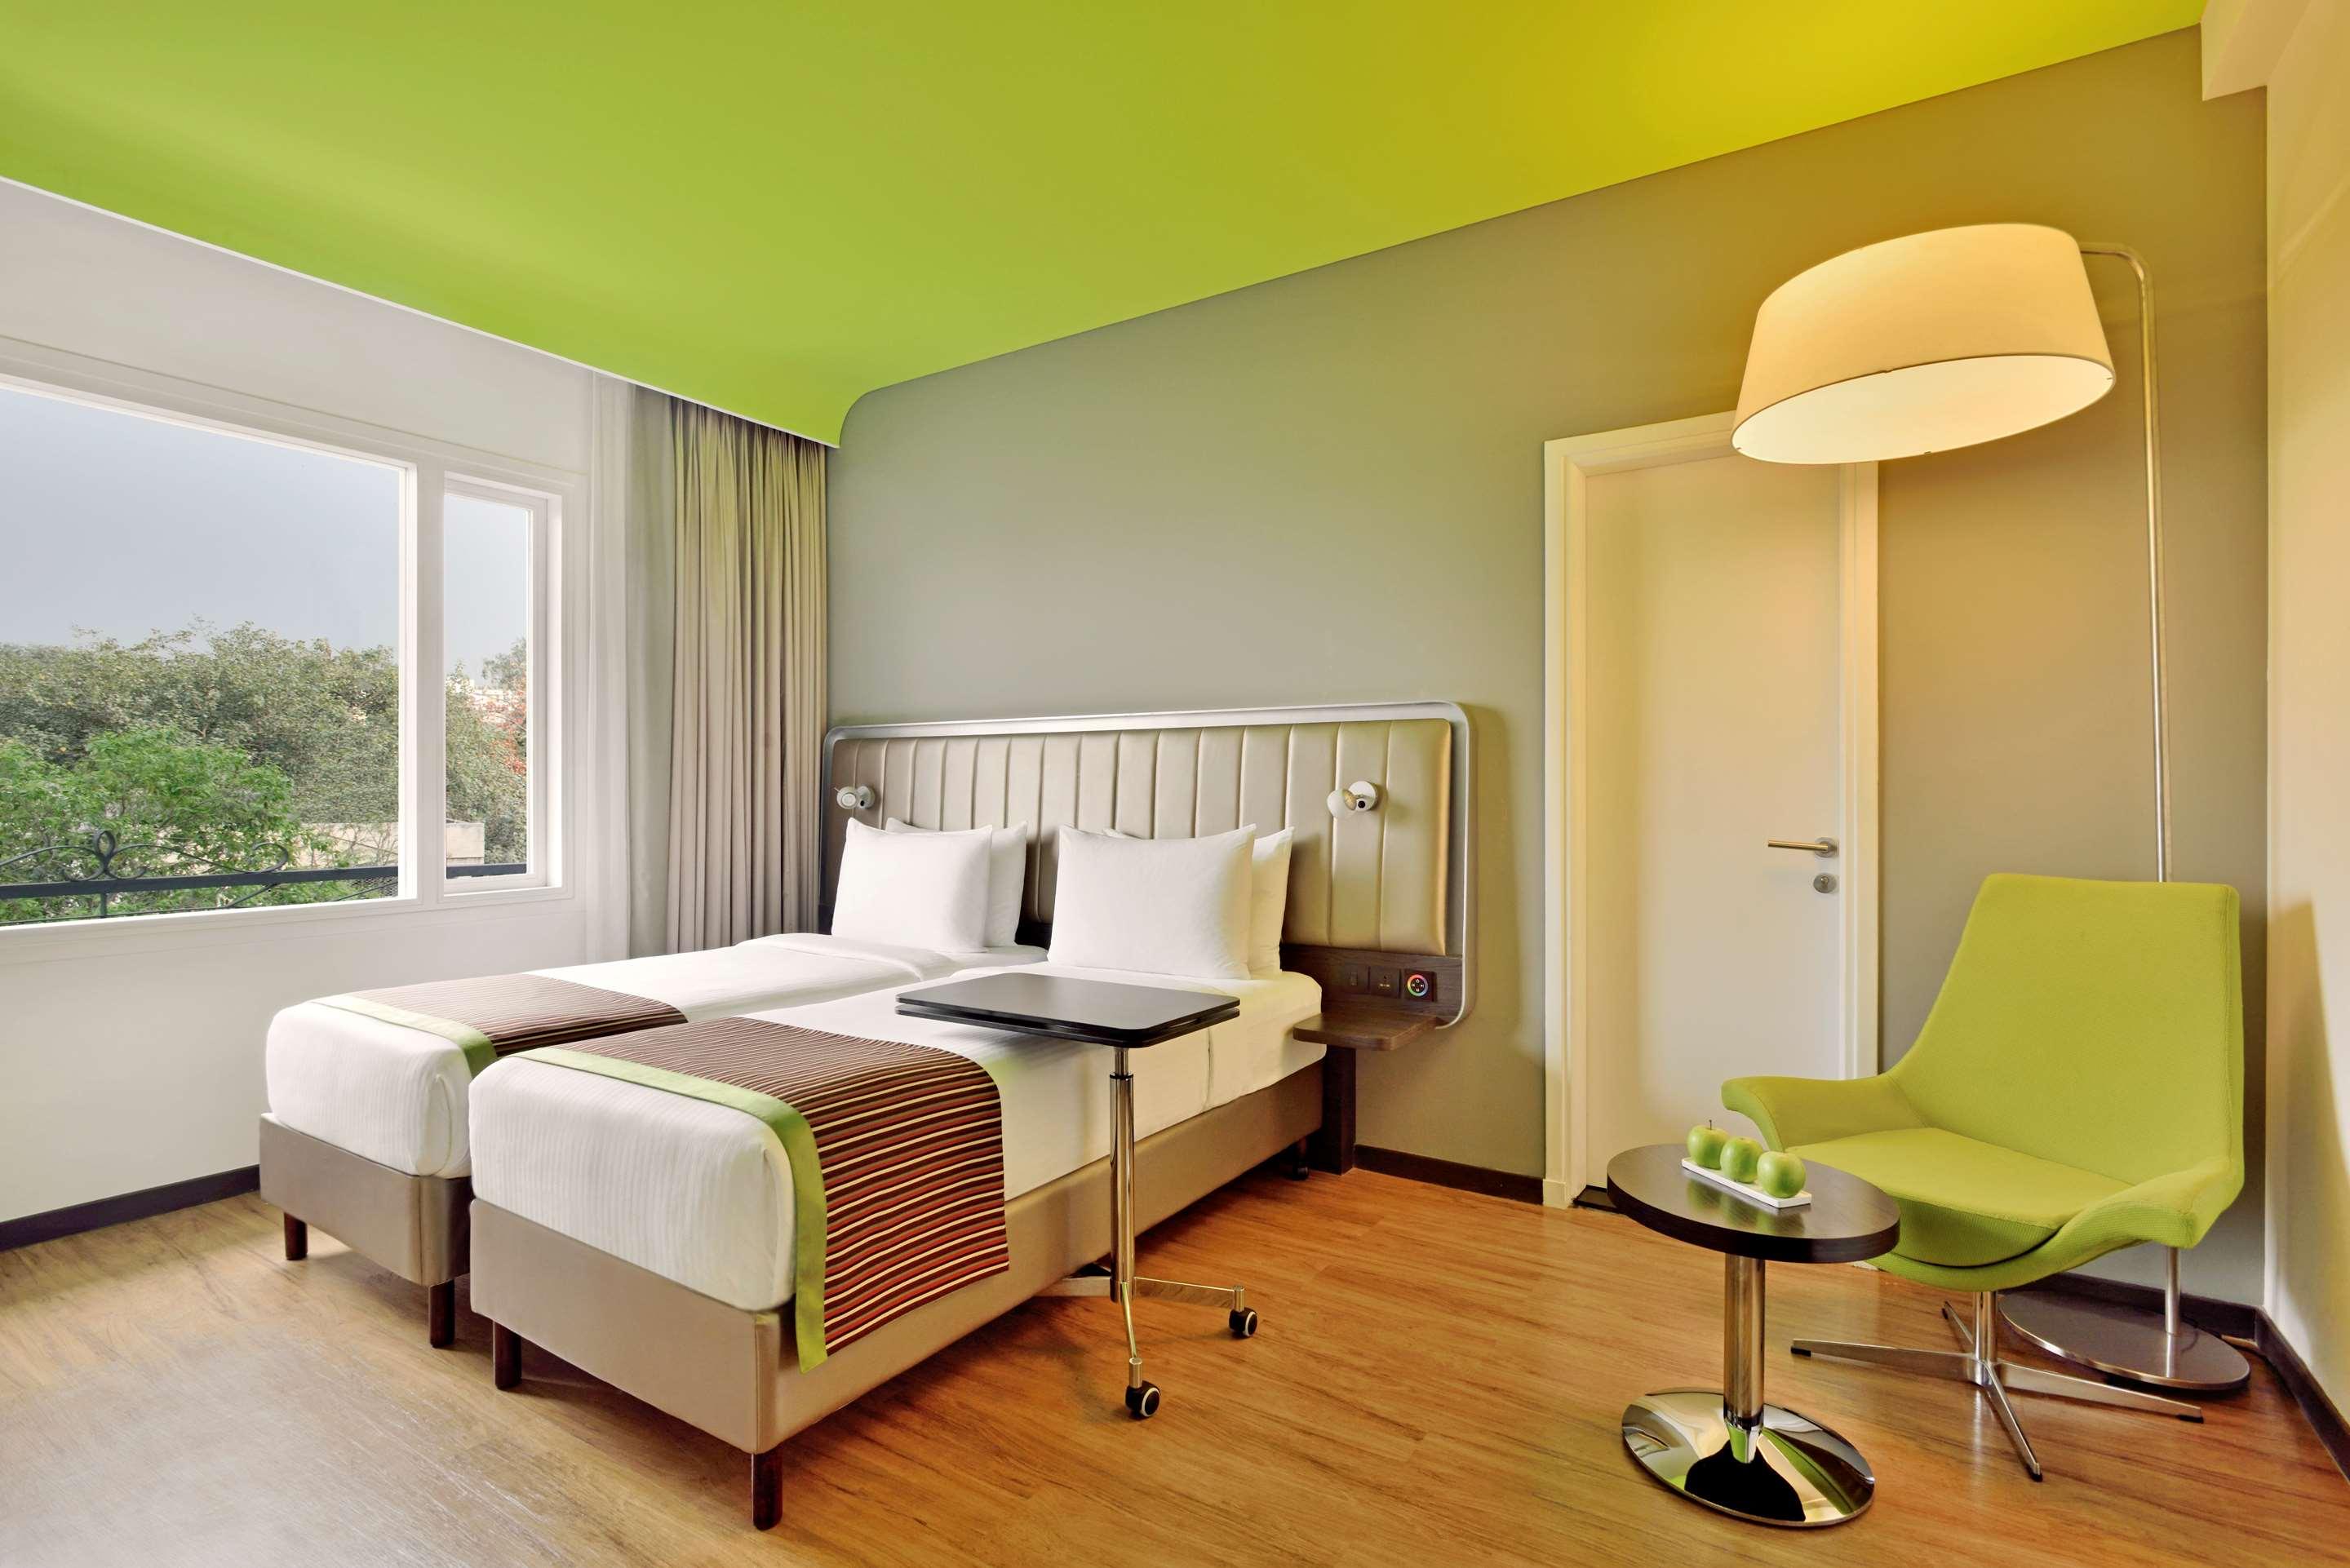 Karon Hotels - Lajpat Nagar, New Delhi - Reserving.com